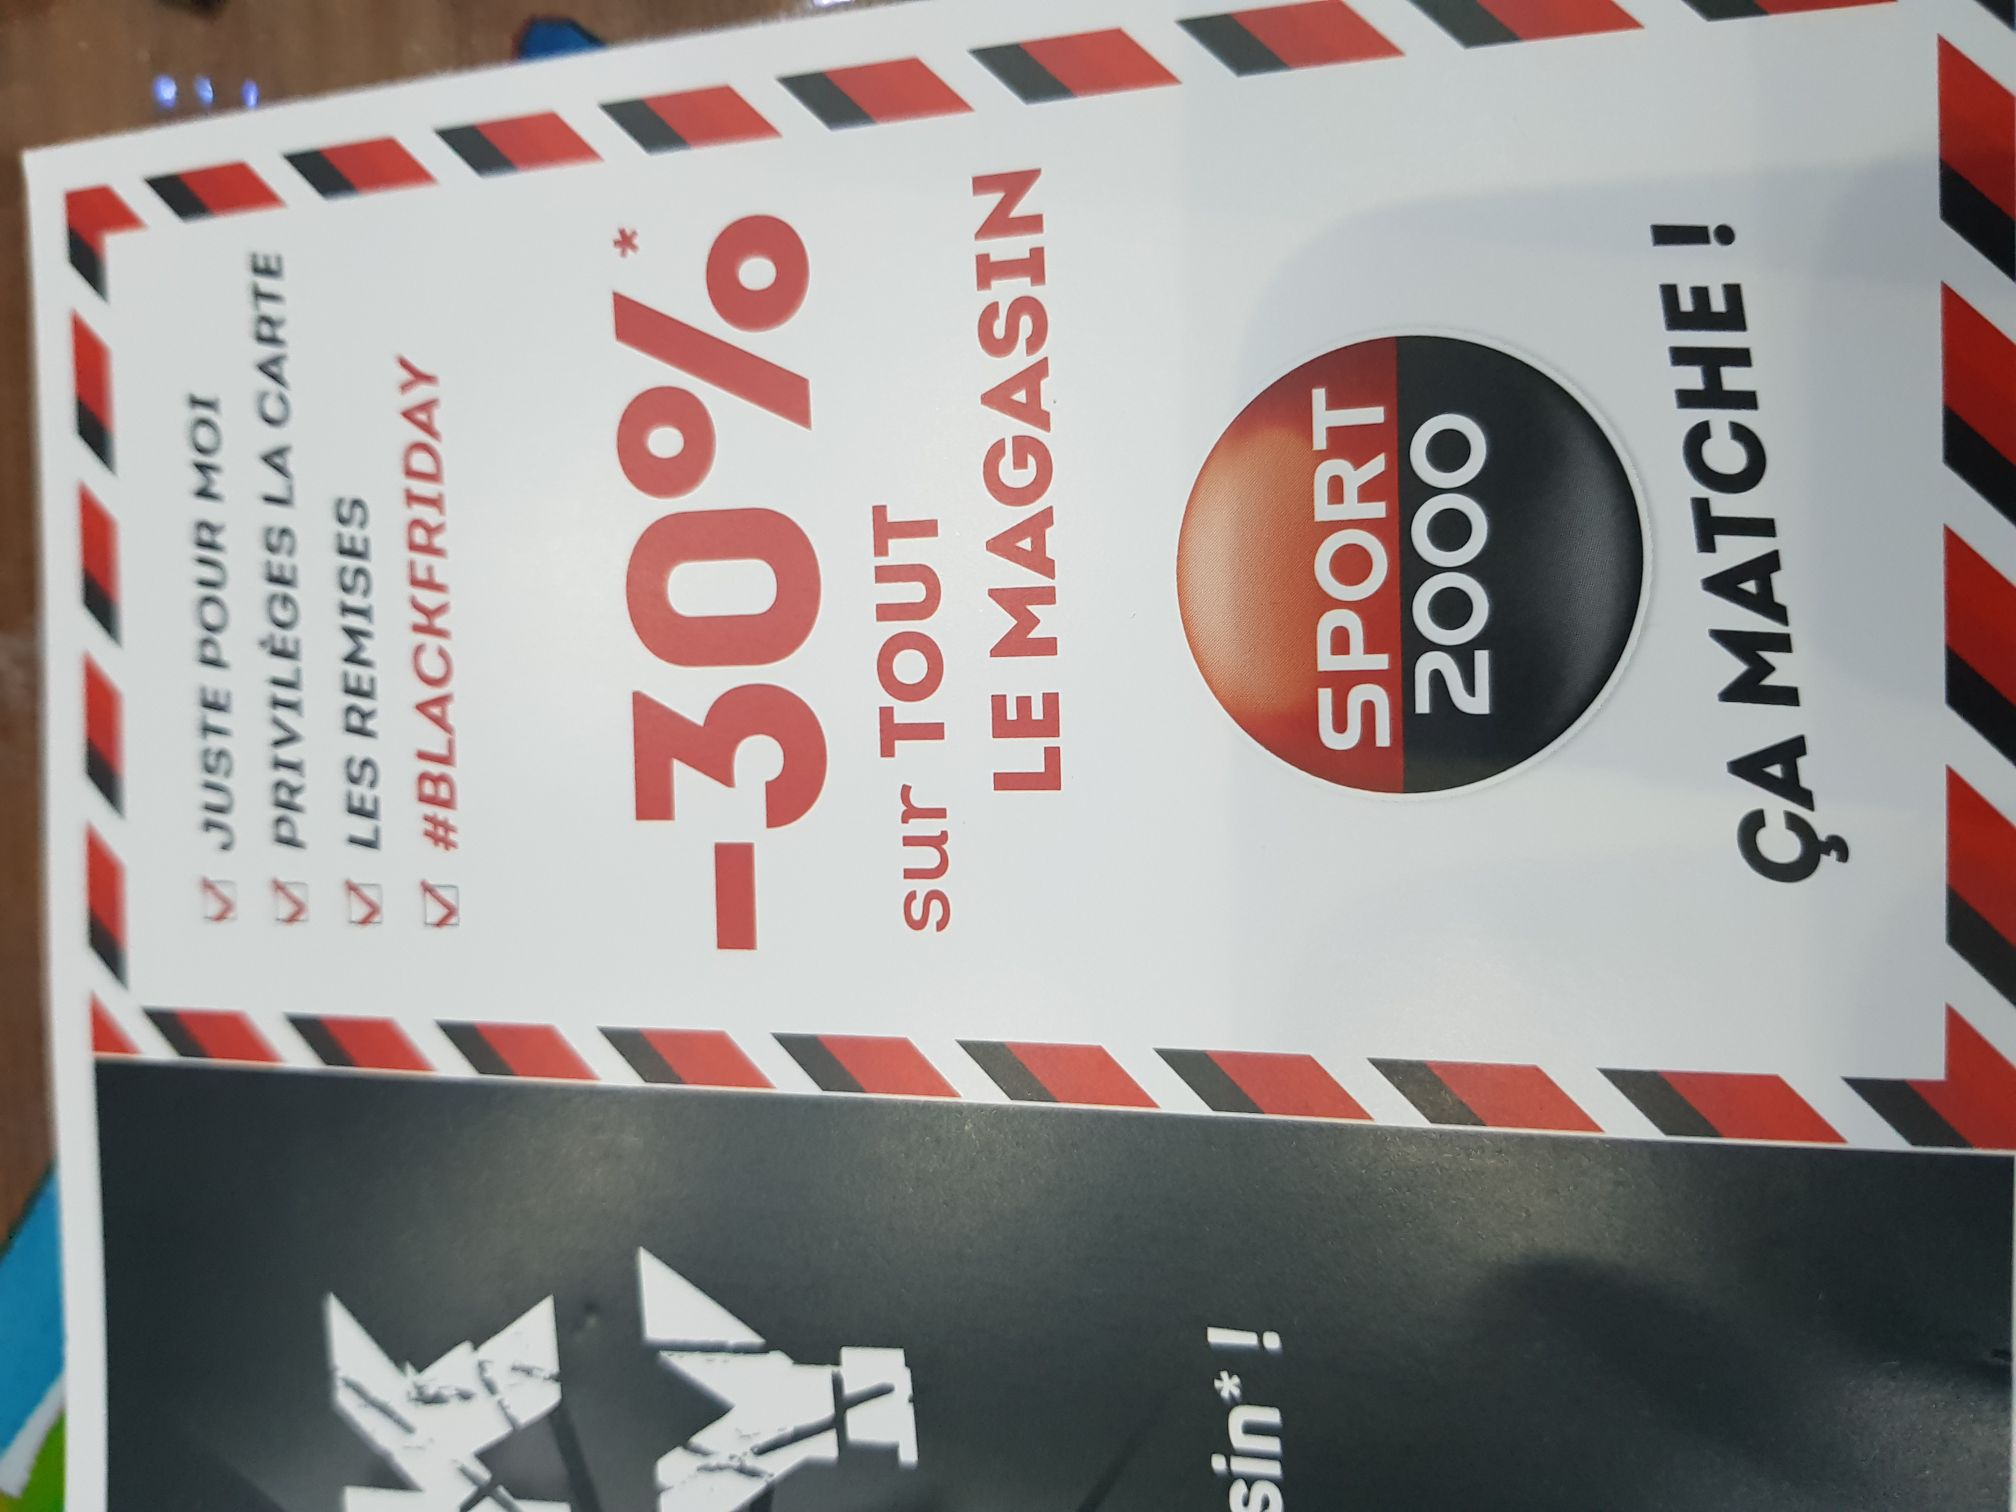 Code promo Sport 2000 » 15€ de réduction en février 2018 - Dealabs.com